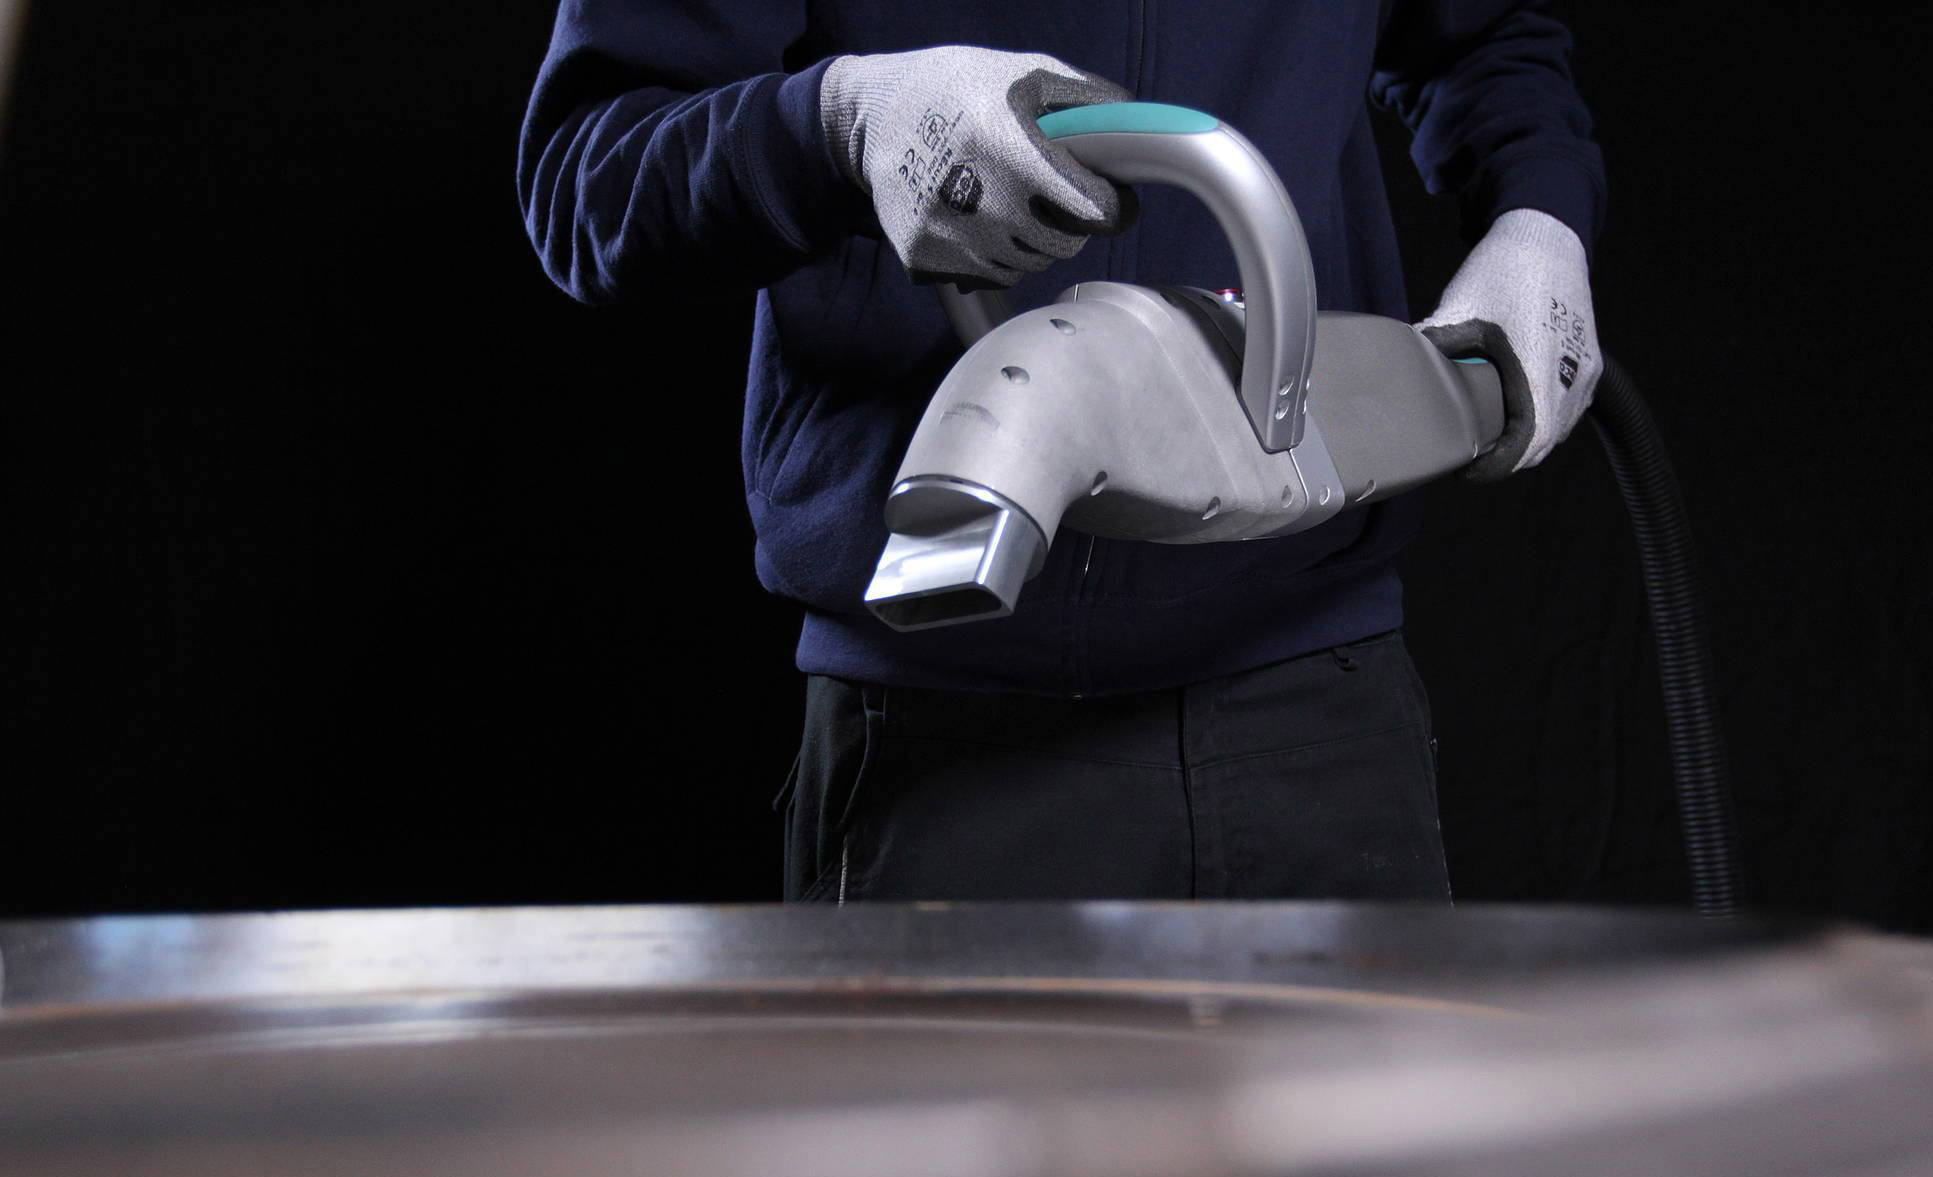 Décapage laser : Une prestation hautement qualitative pour nettoyer vos  matériaux